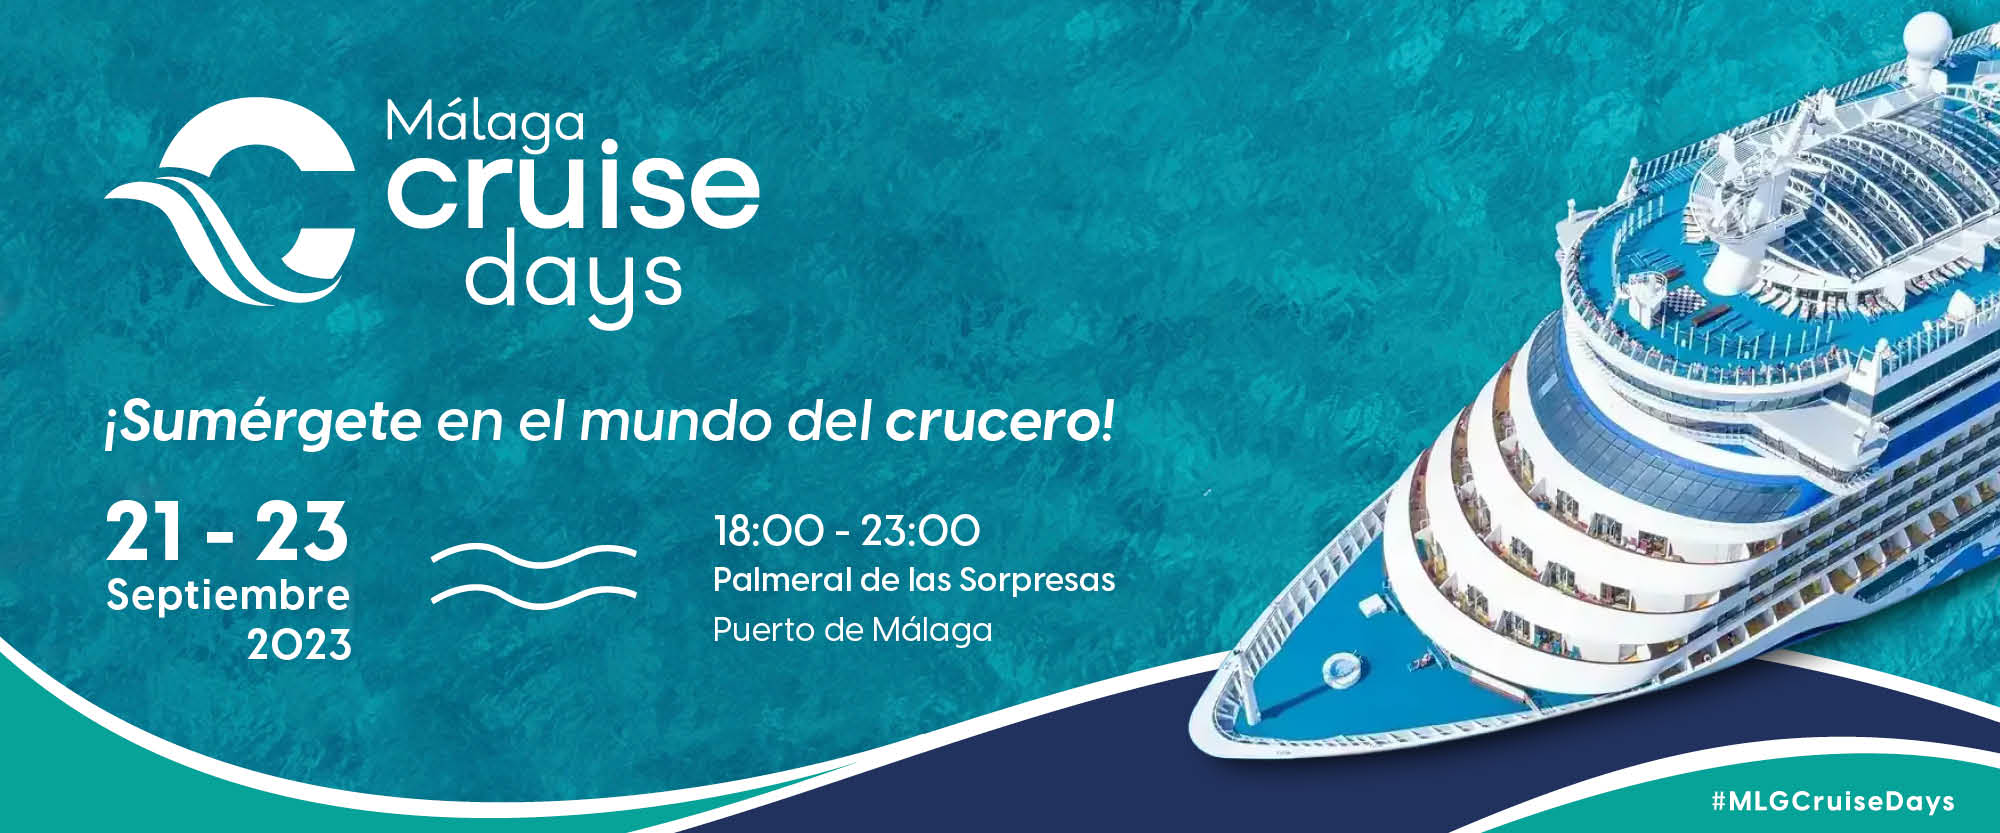 Programación Málaga Cruise Days